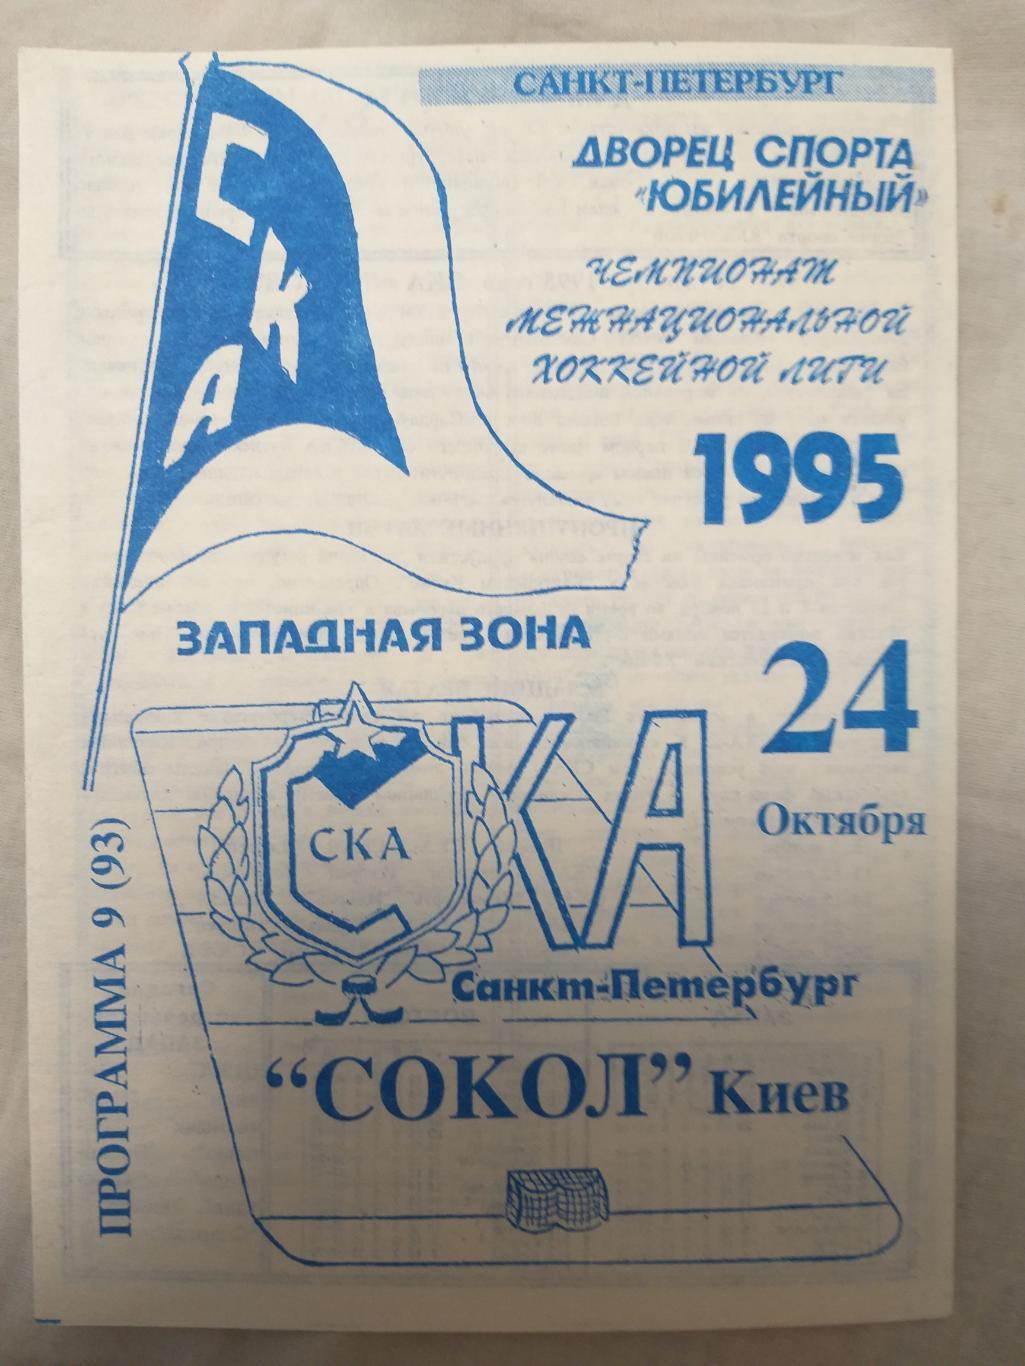 СКА-Сокол(Киев) 24.10.1995 второй вид